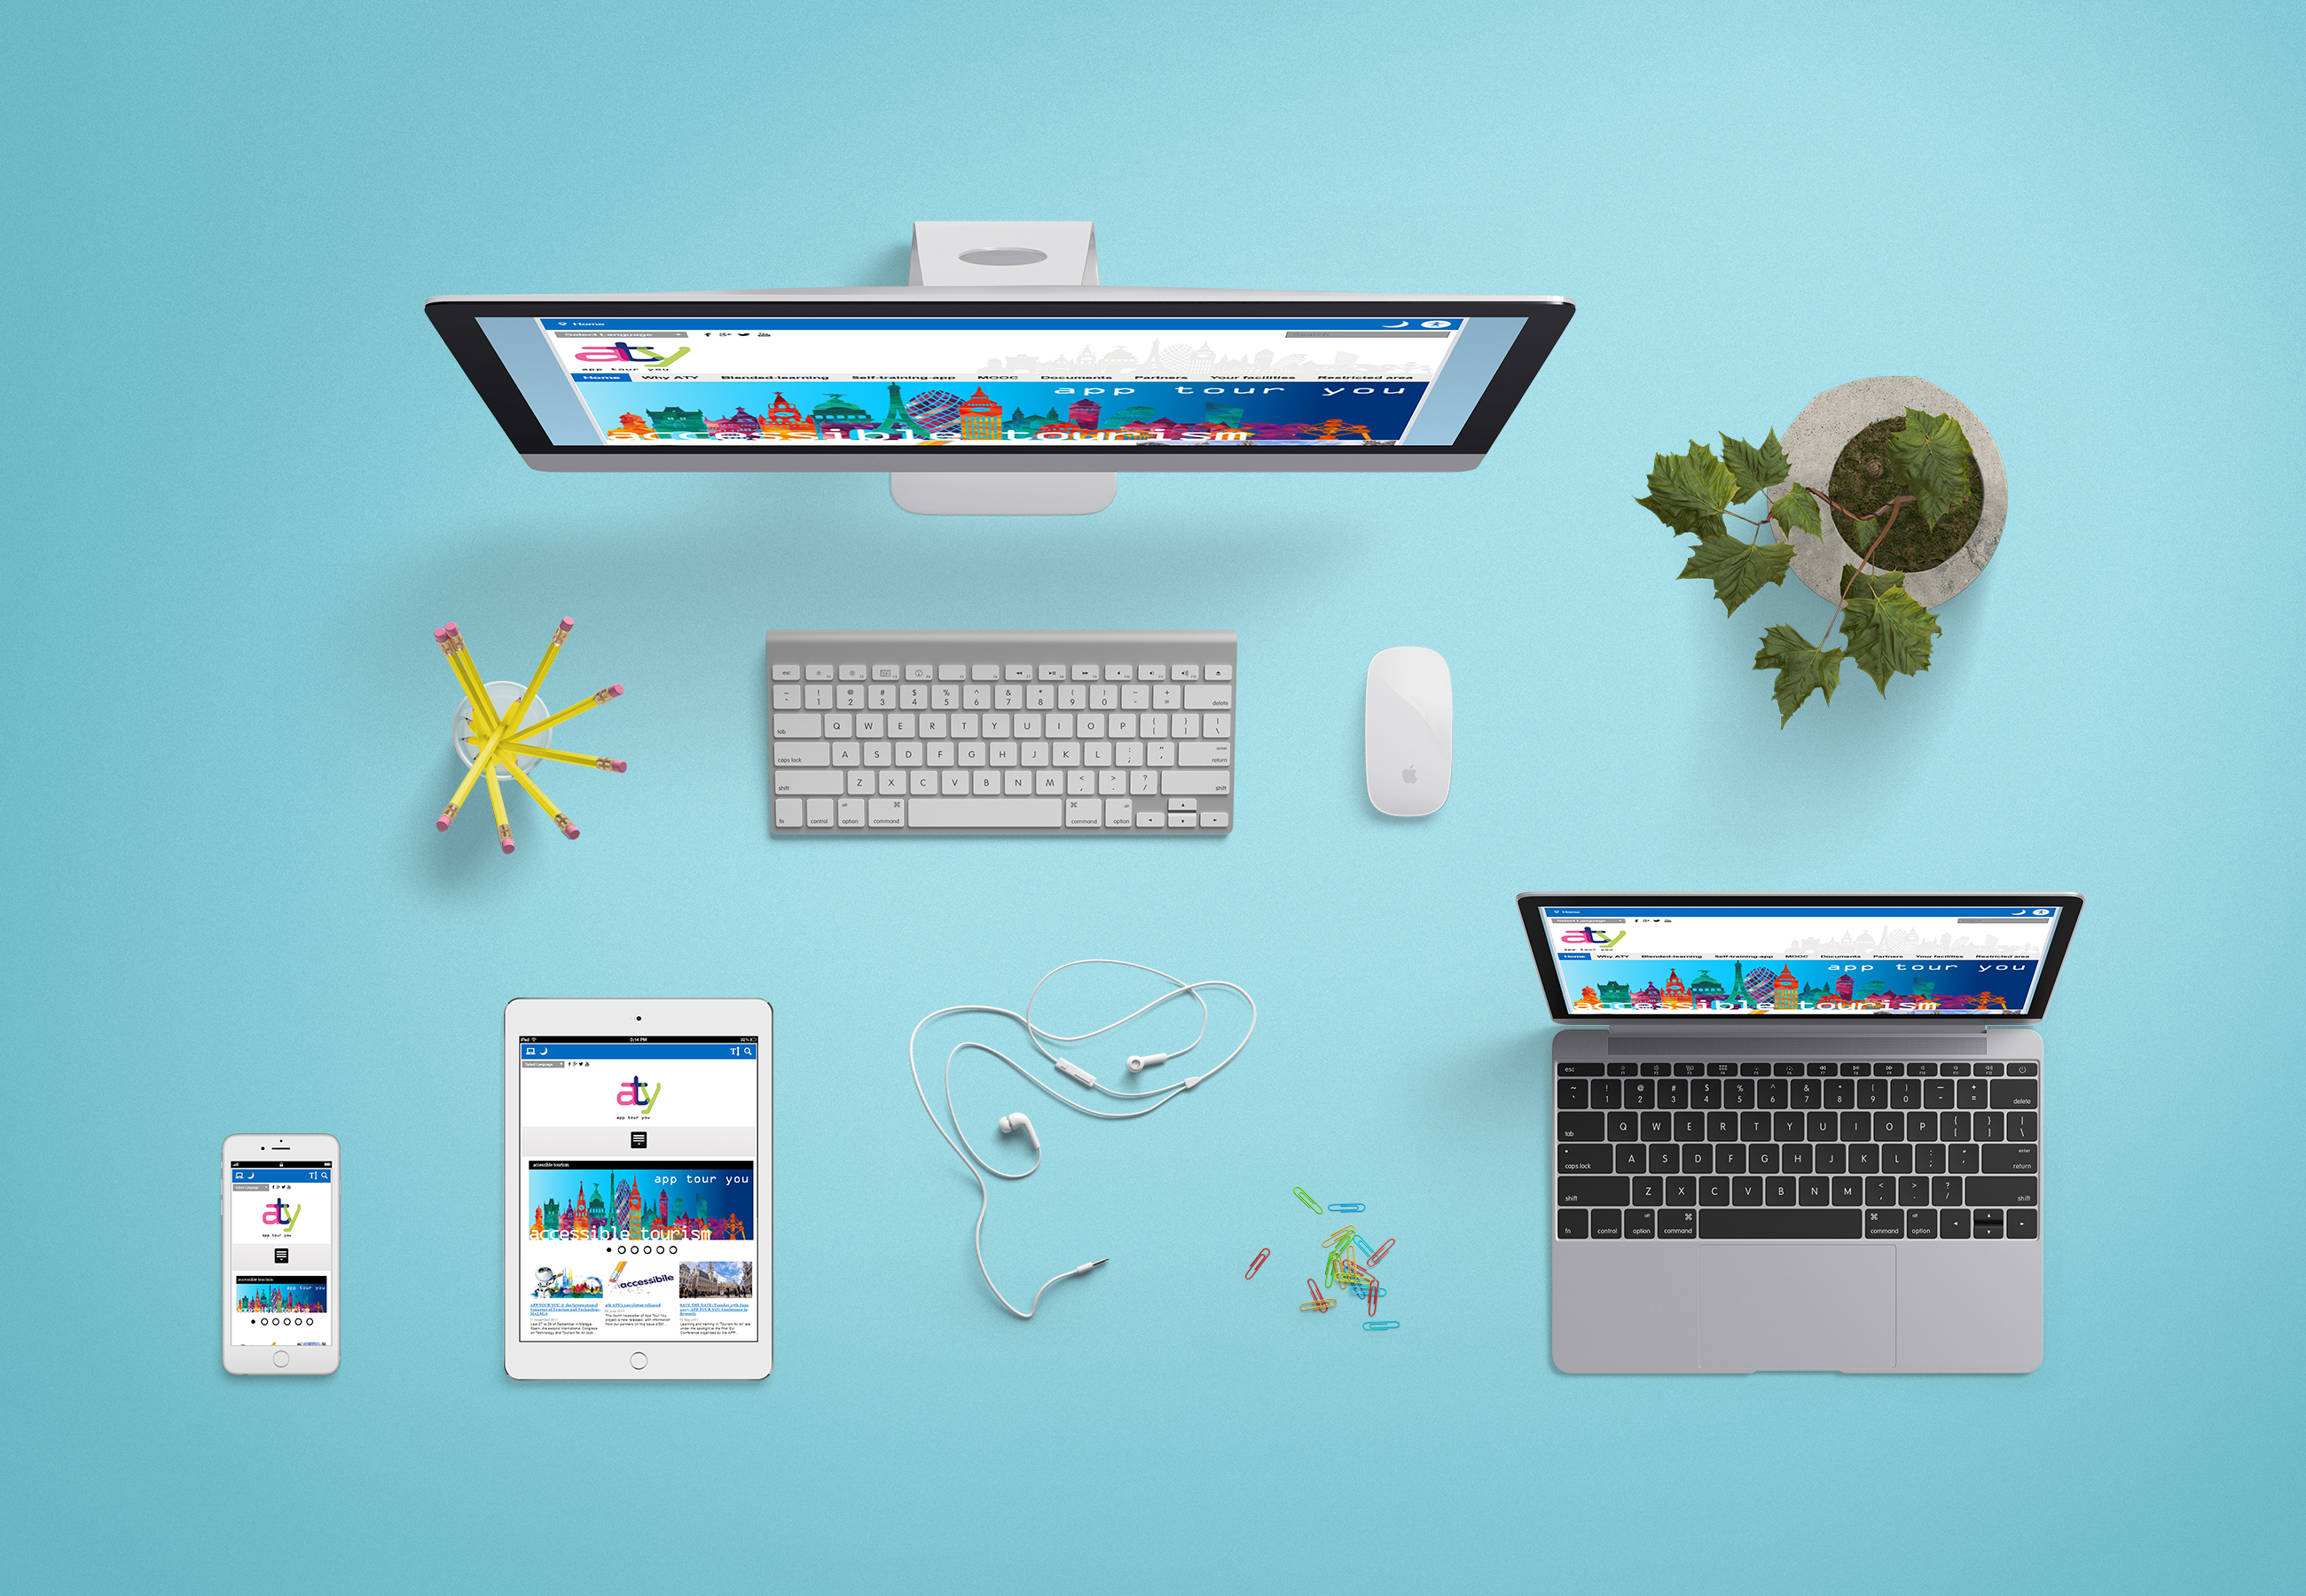 Mockup contenente diversi dispositivi con l'home page del sito App Tour You